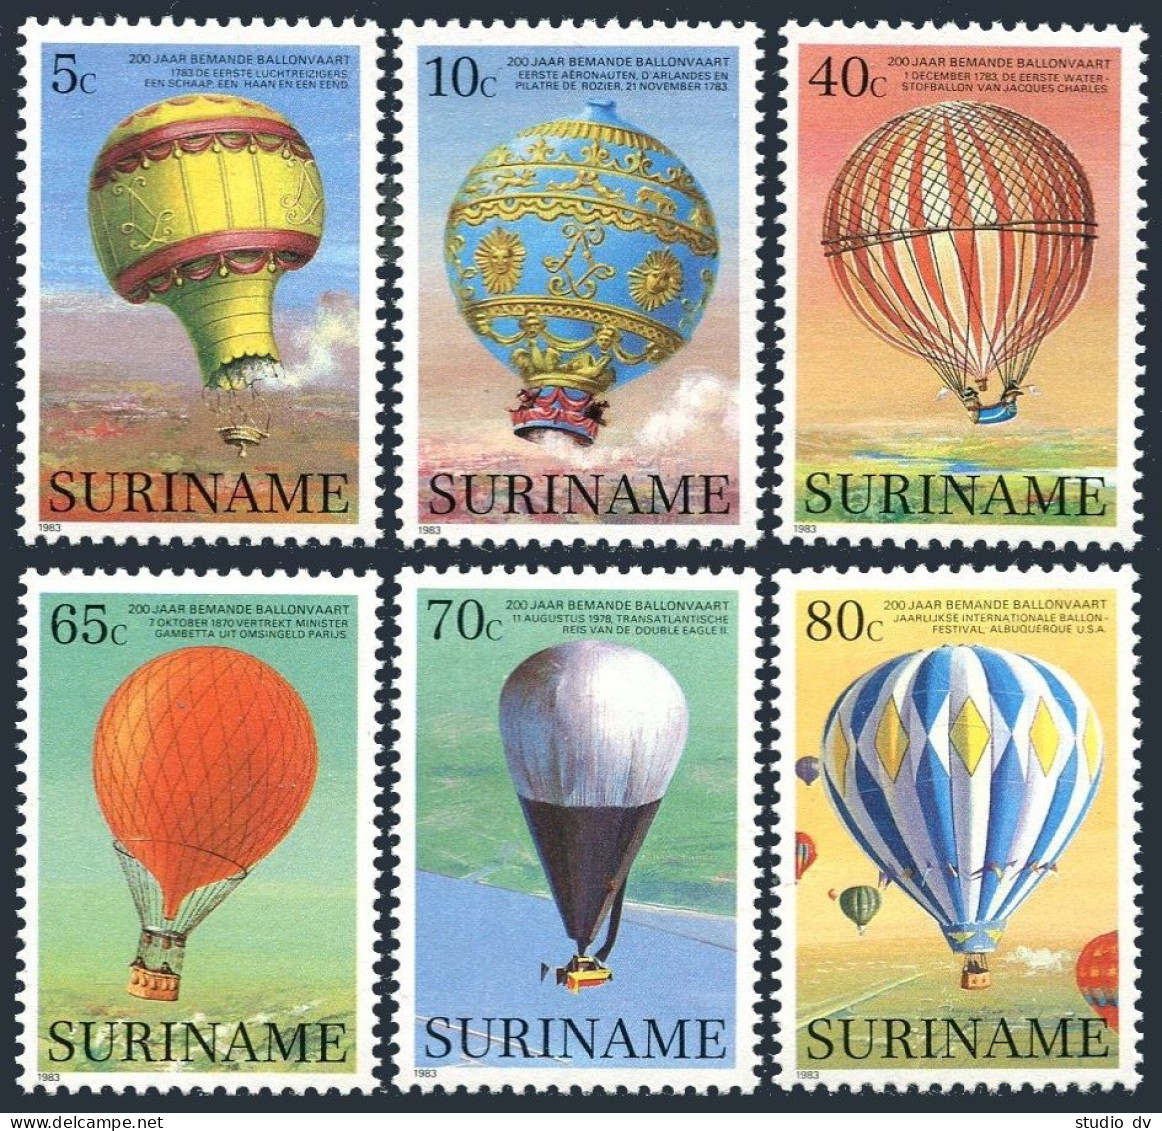 Surinam 655-660, MNH. Michel 1052-1057. Manned Ballooning, 200th Ann. 1983. - Surinam